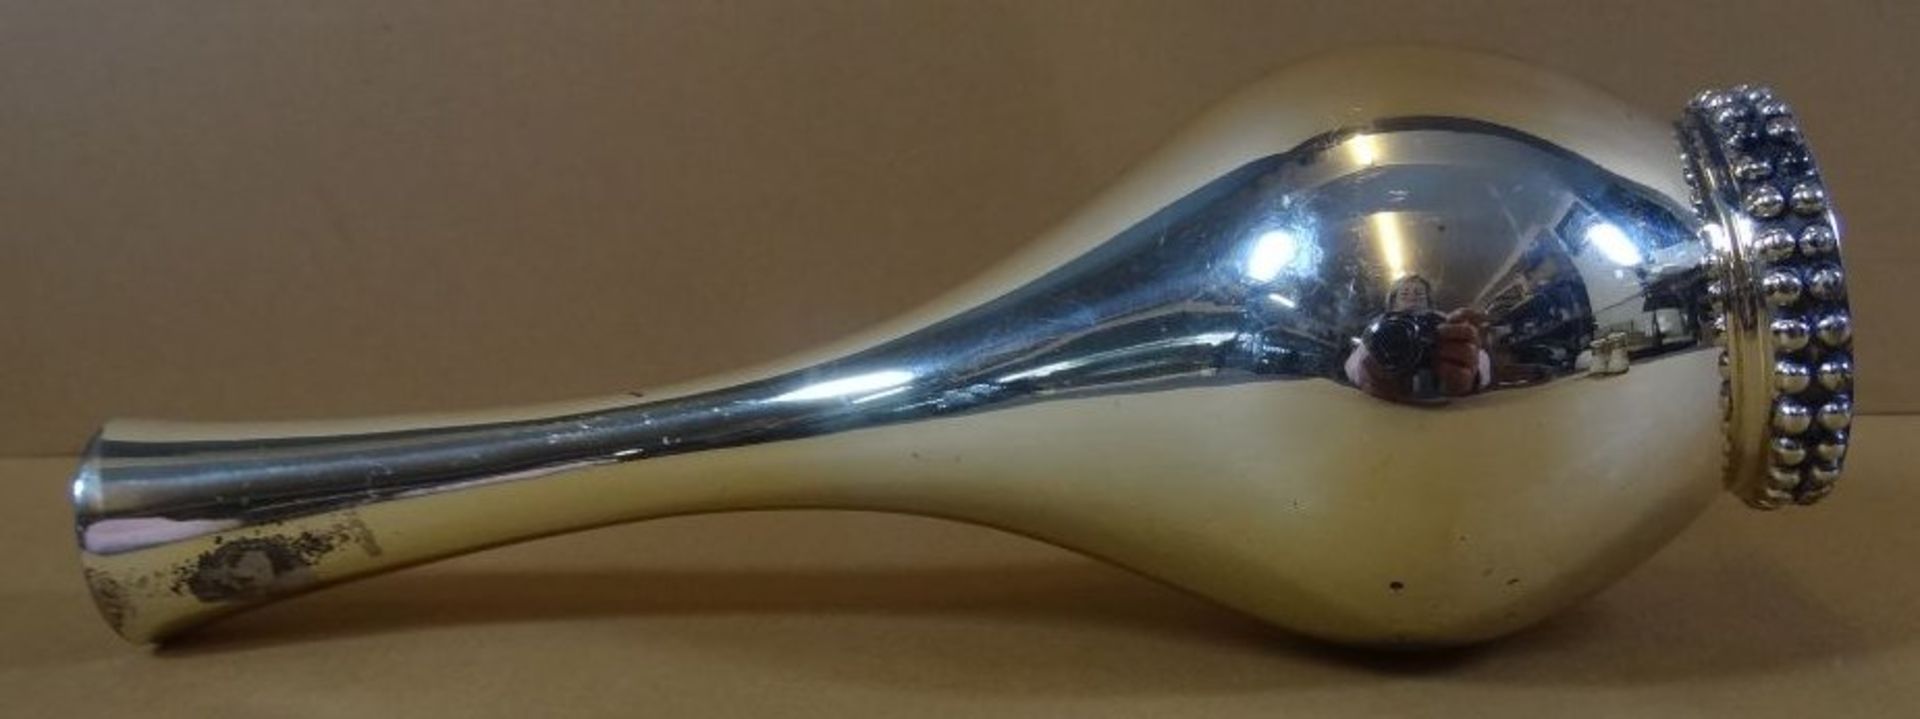 Vase, Silber-925-, H-15,5 cm, 90 gr. - Image 3 of 4